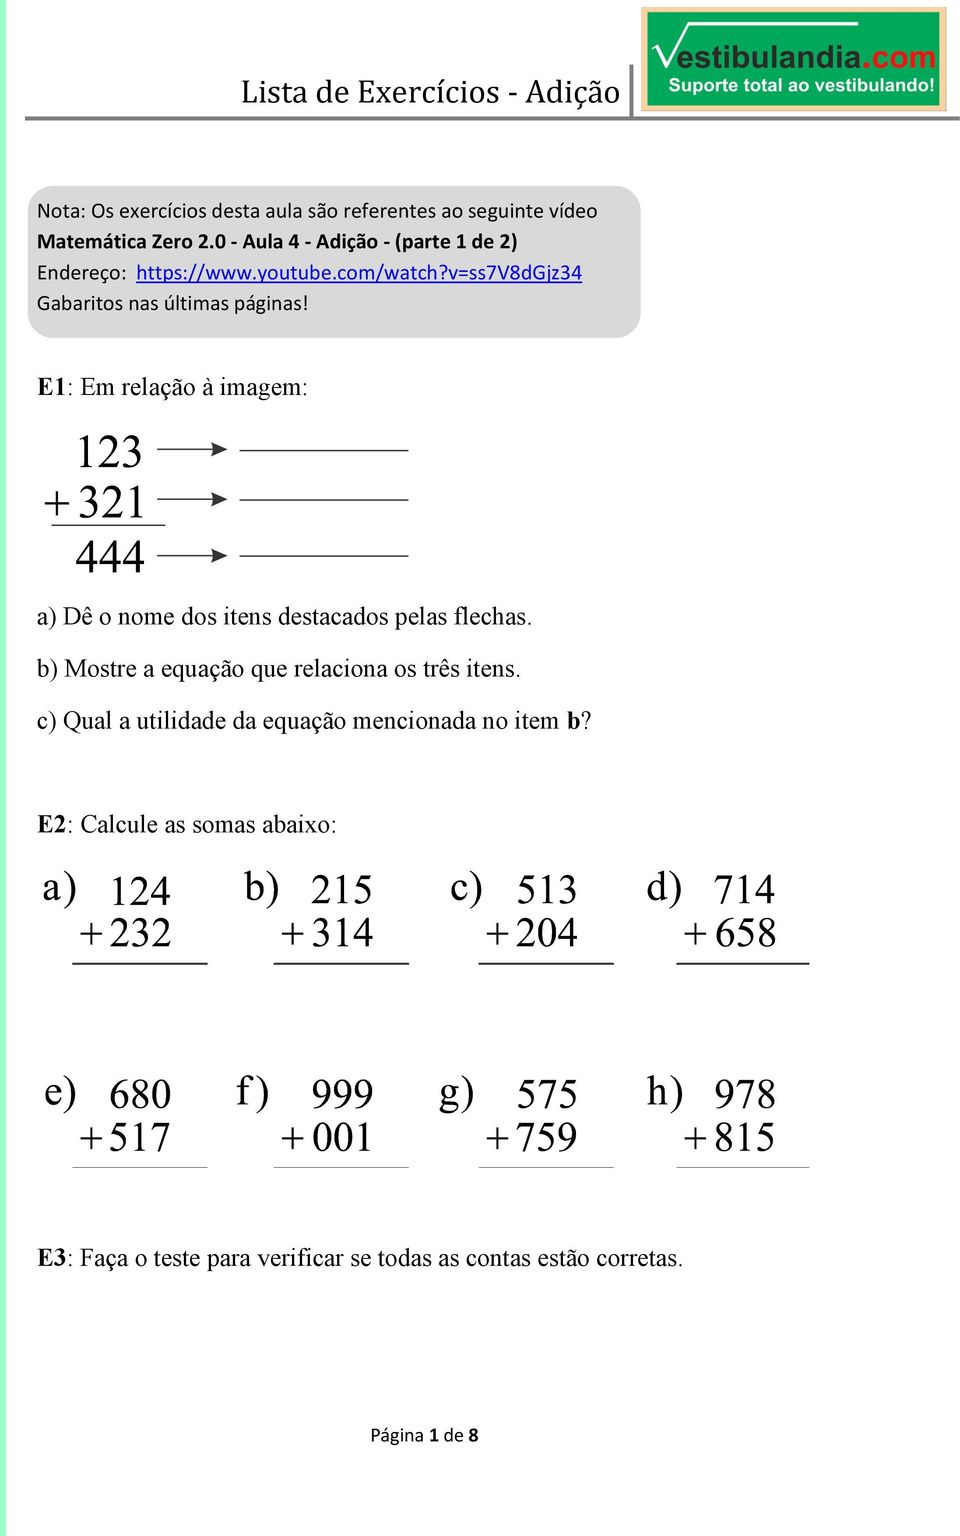 E1: Em relação à imagem: a) Dê o nome dos itens destacados pelas flechas. b) Mostre a equação que relaciona os três itens.